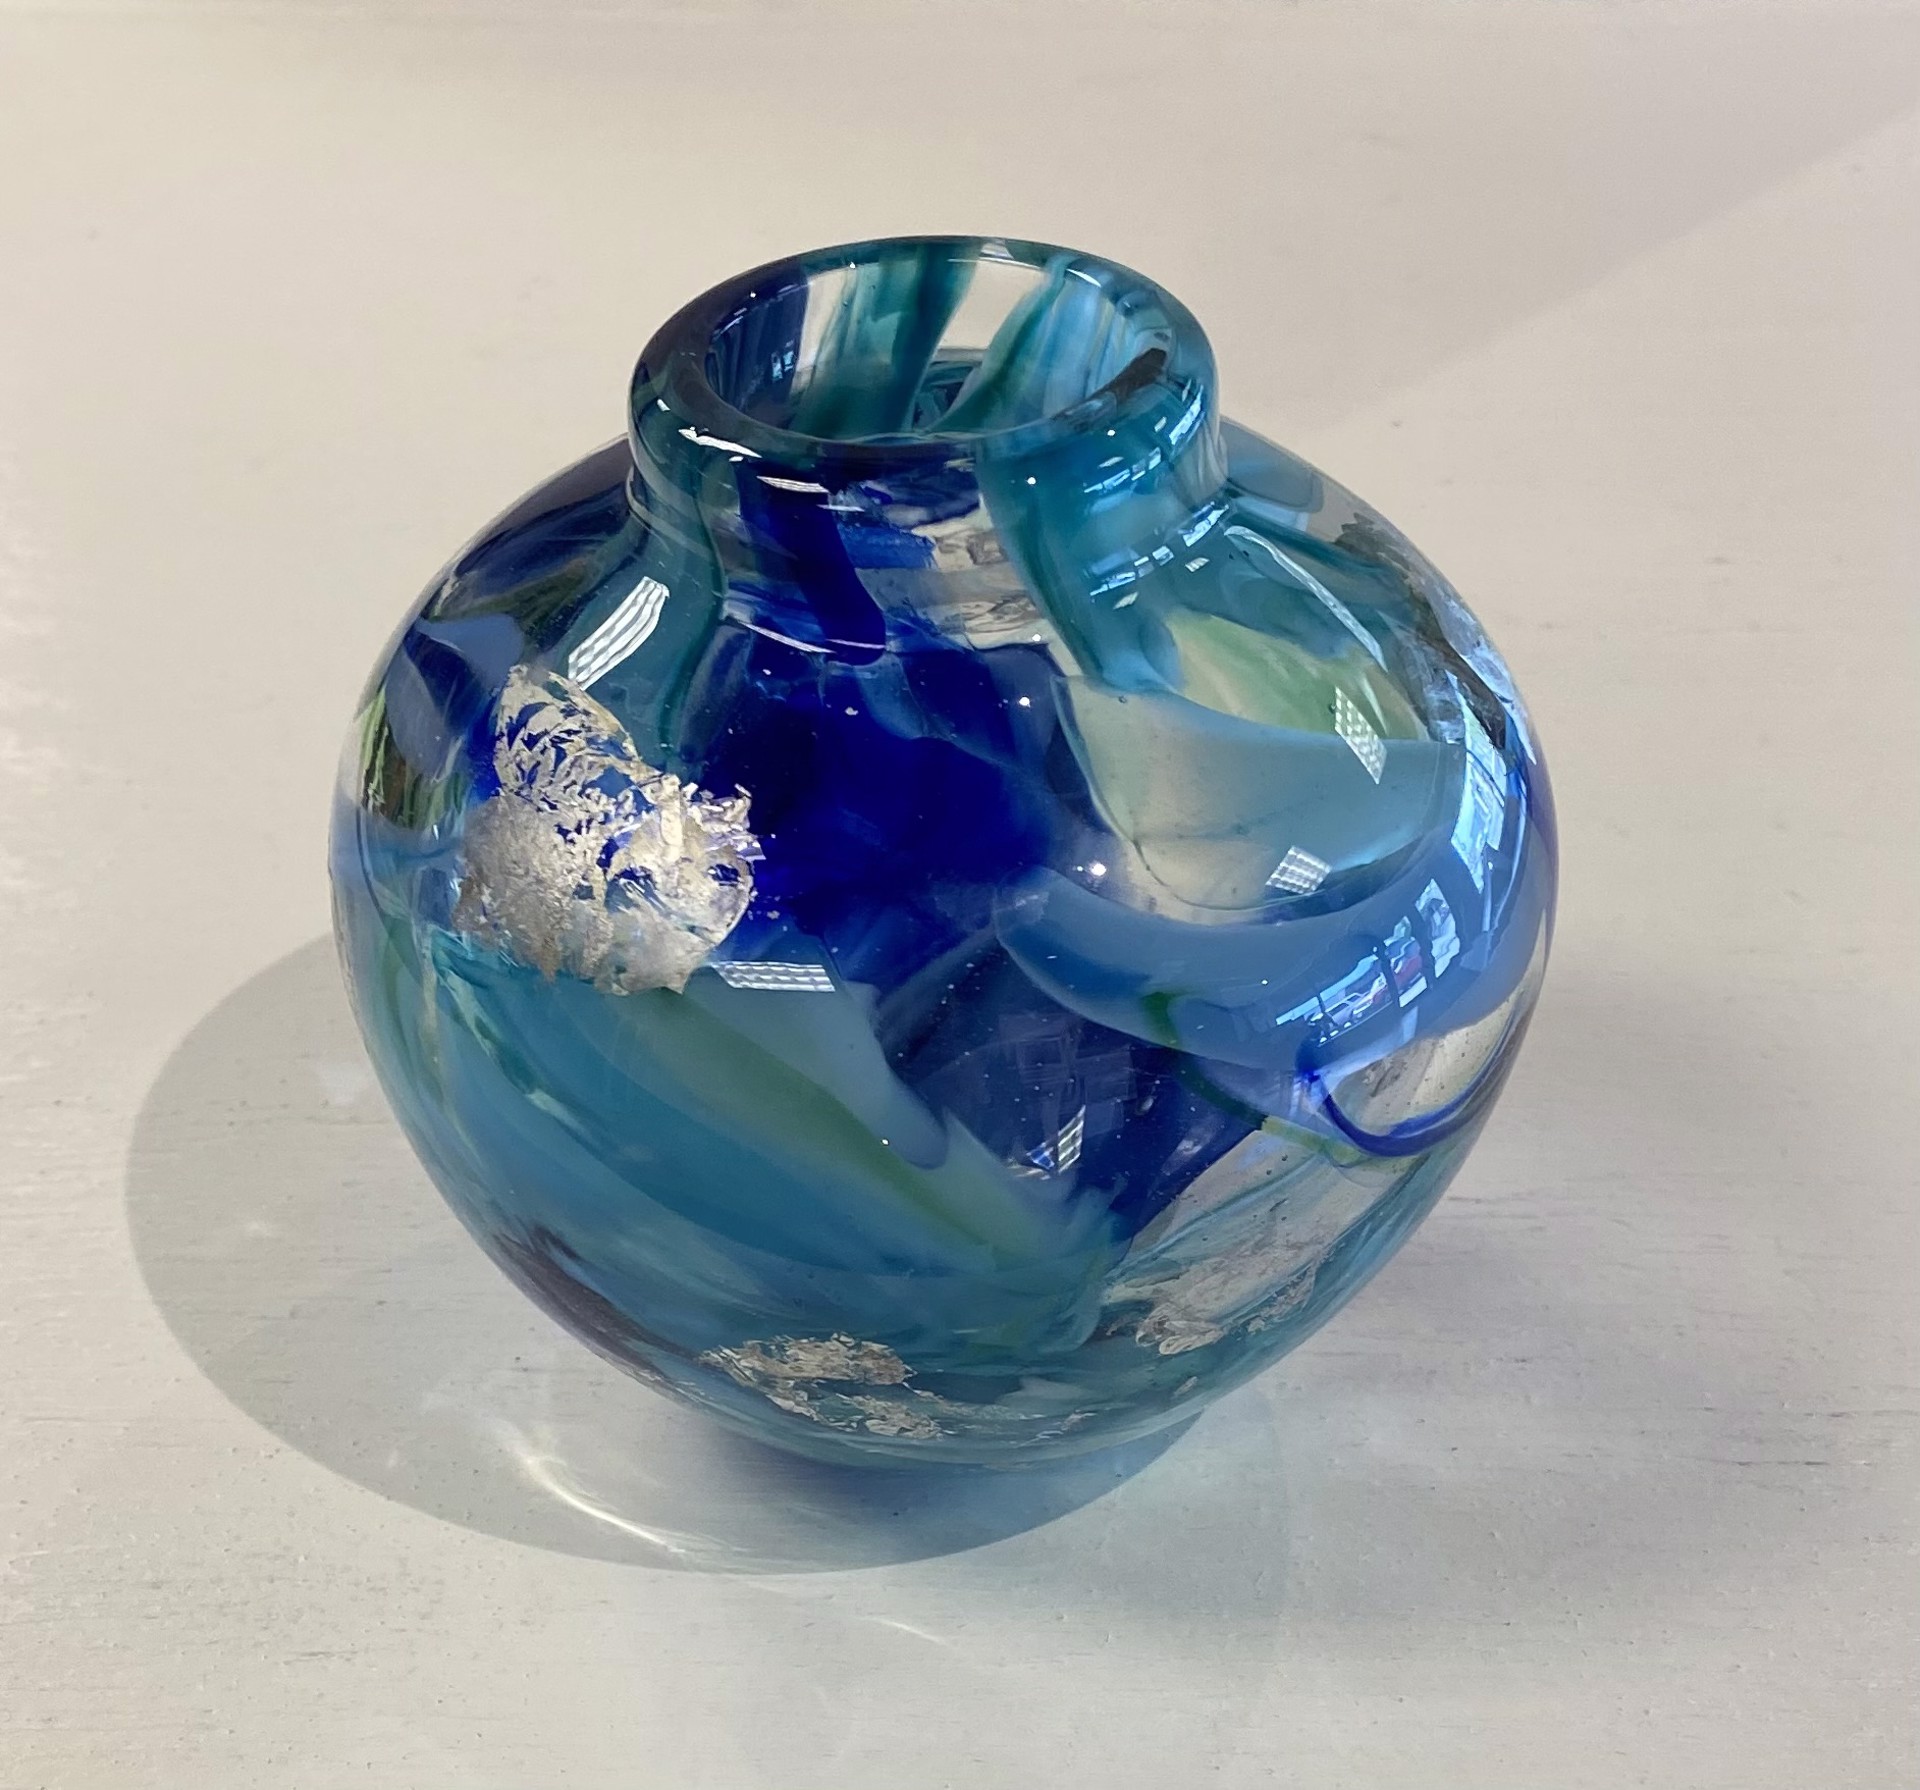 Shard Bowl Blue Turq Silverleaf by AlBo Glass